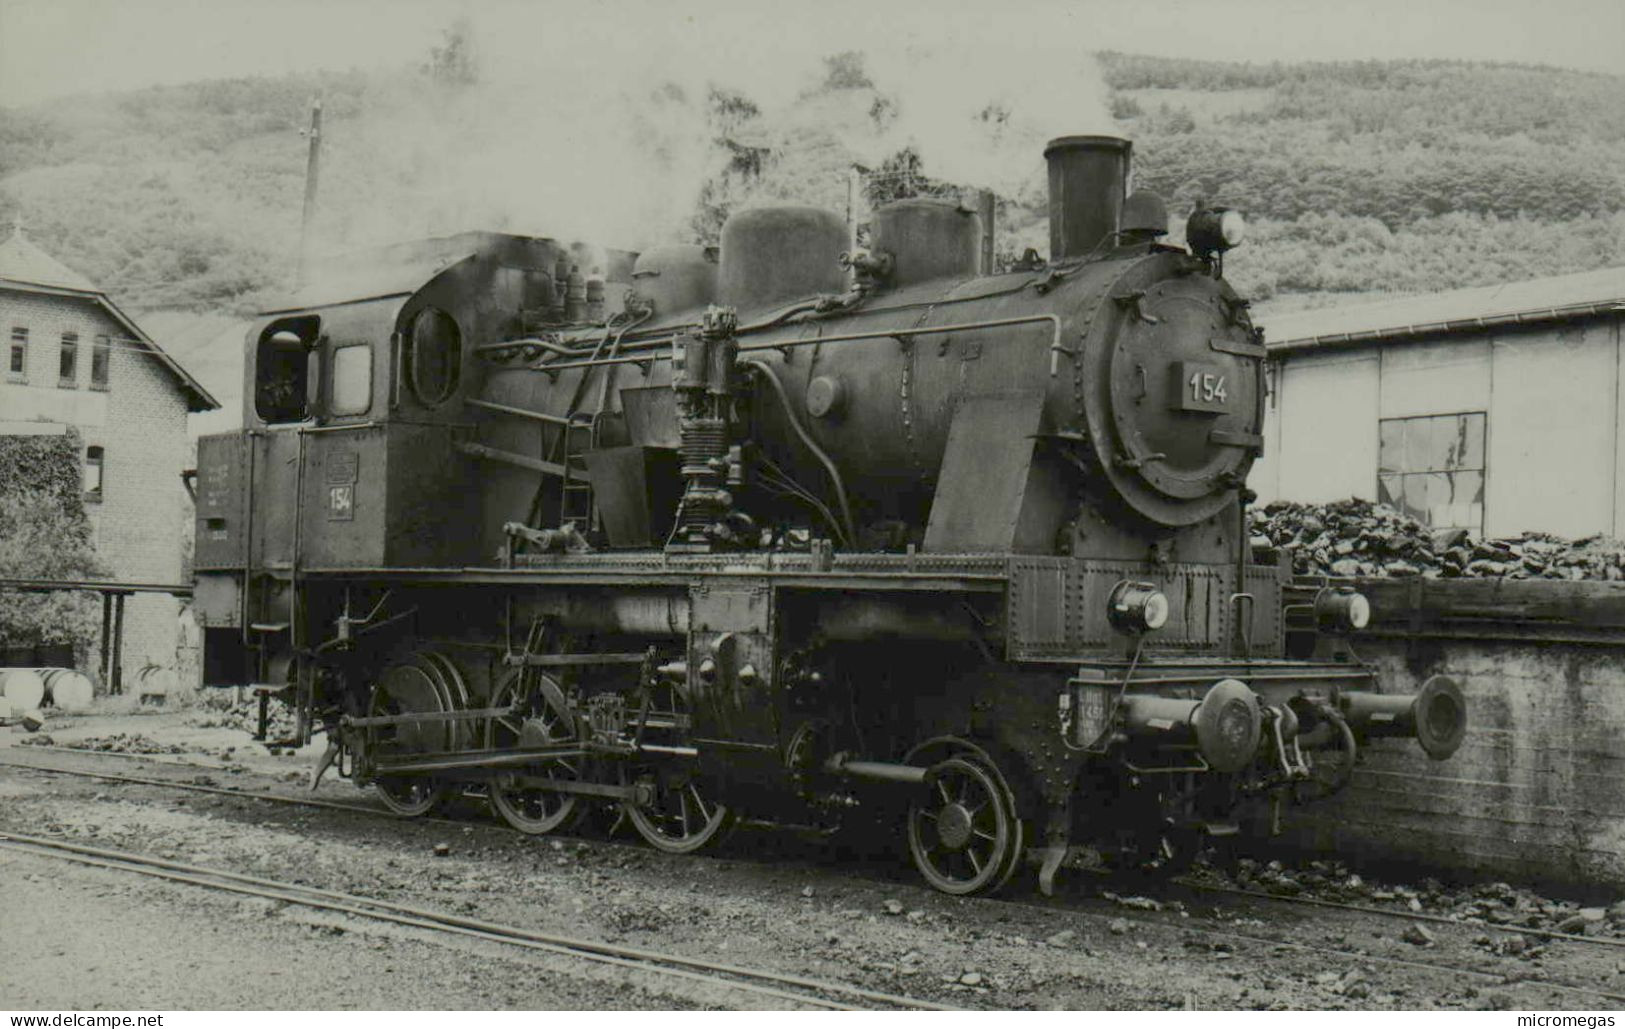 Locomotive 154 - Cliché Jacques H. Renaud - Treinen